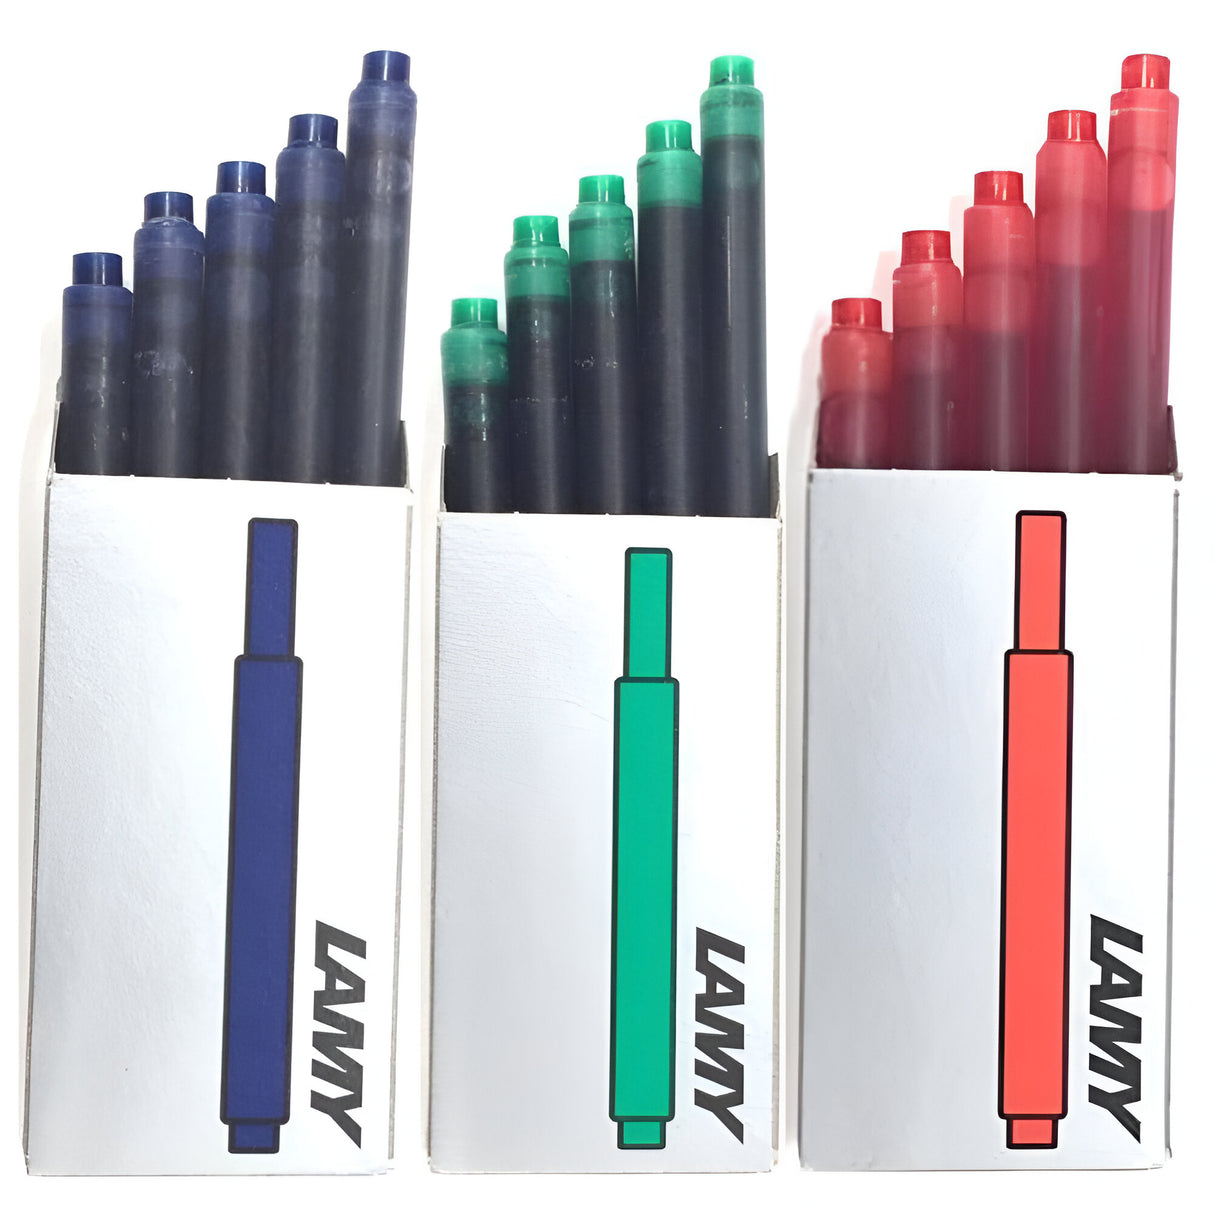 Lamy - Pack 5 Recarga de Tinta T10 para Plumas